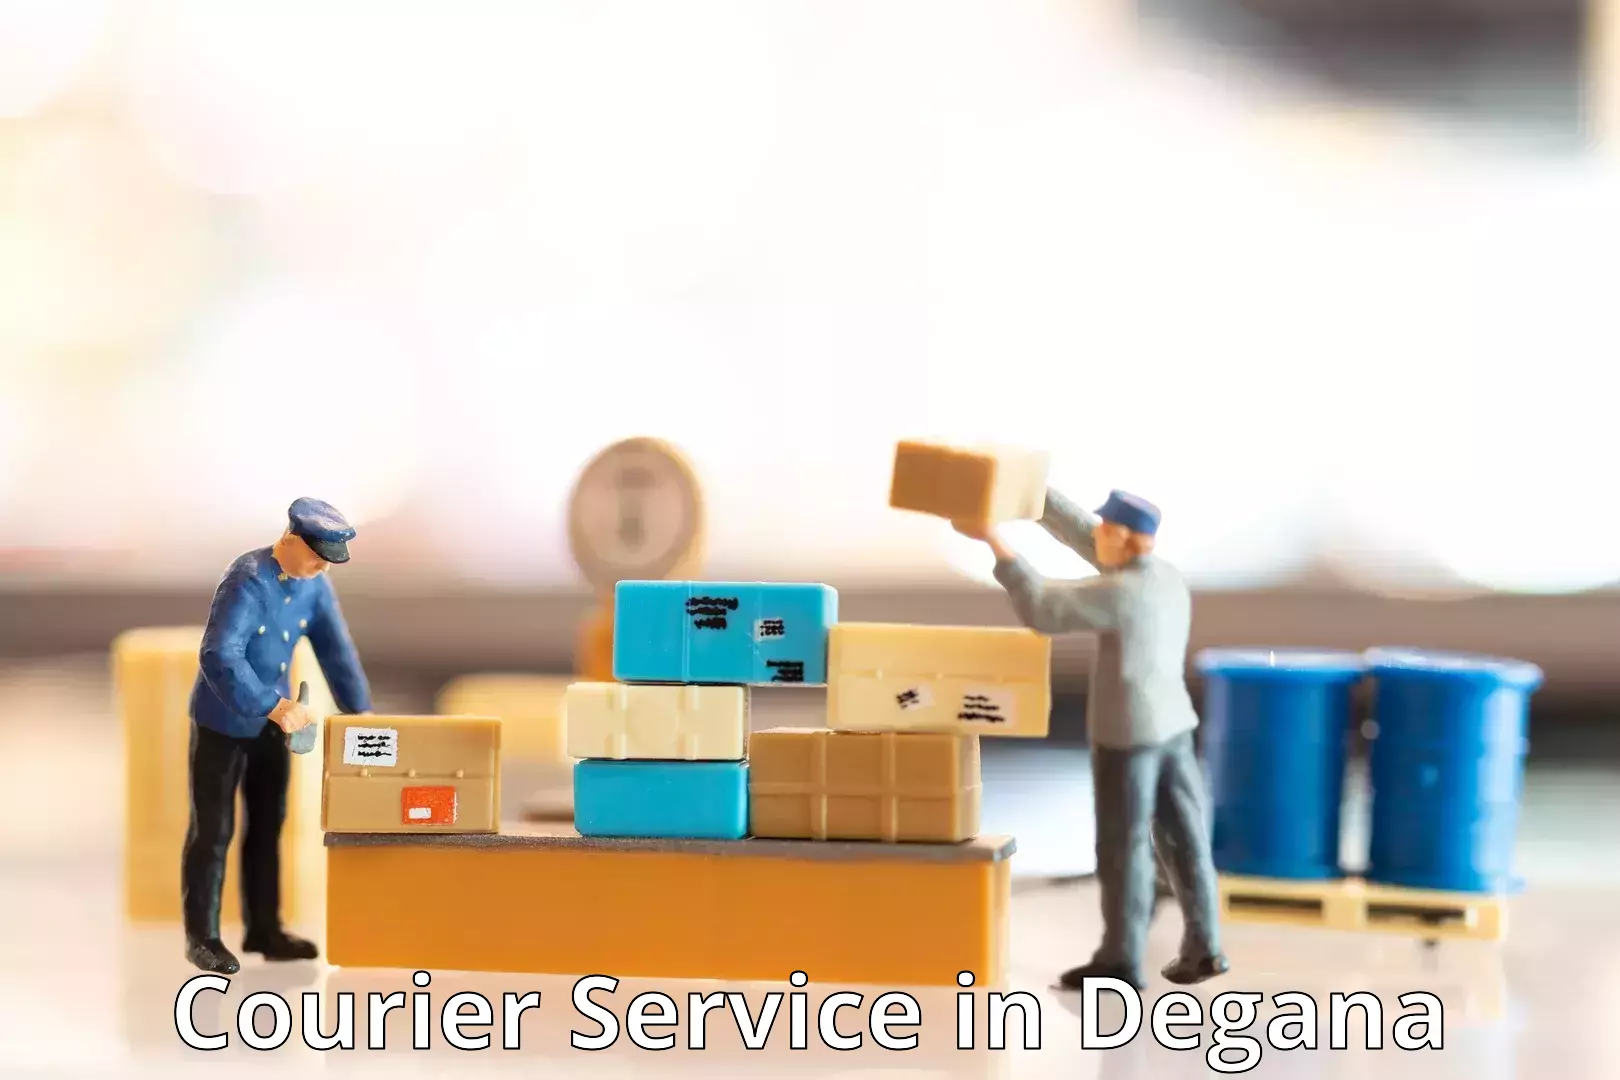 Premium courier services in Degana